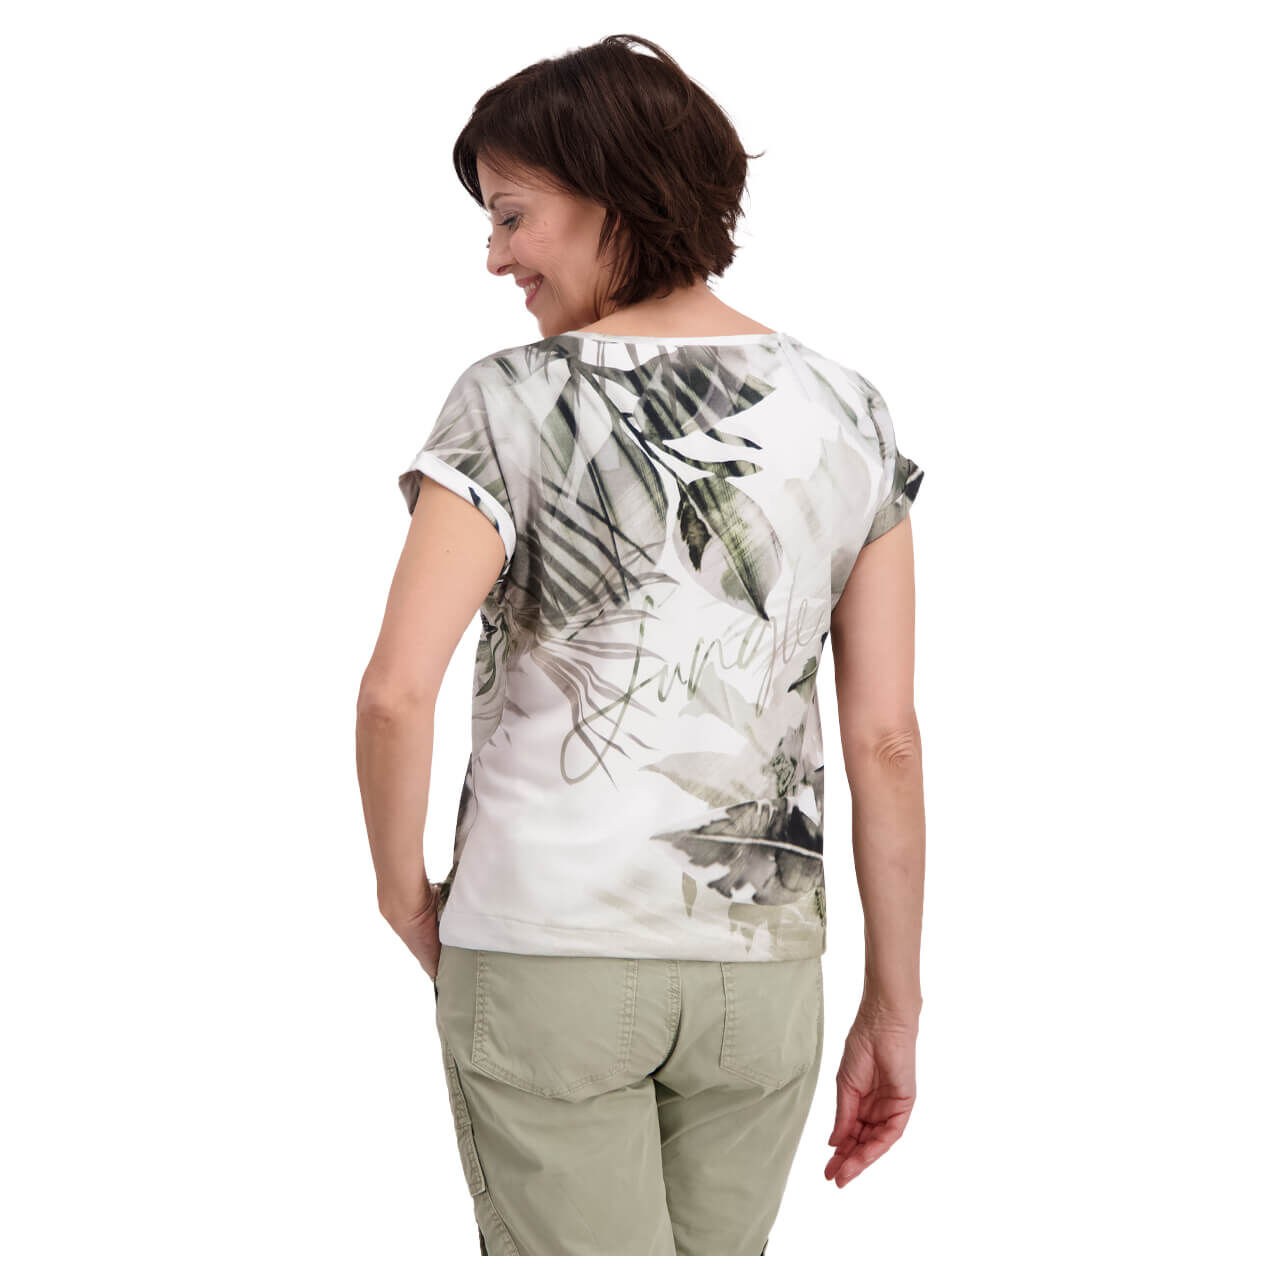 Monari T-Shirt für Damen in Weiß mit Print, FarbNr.: 688